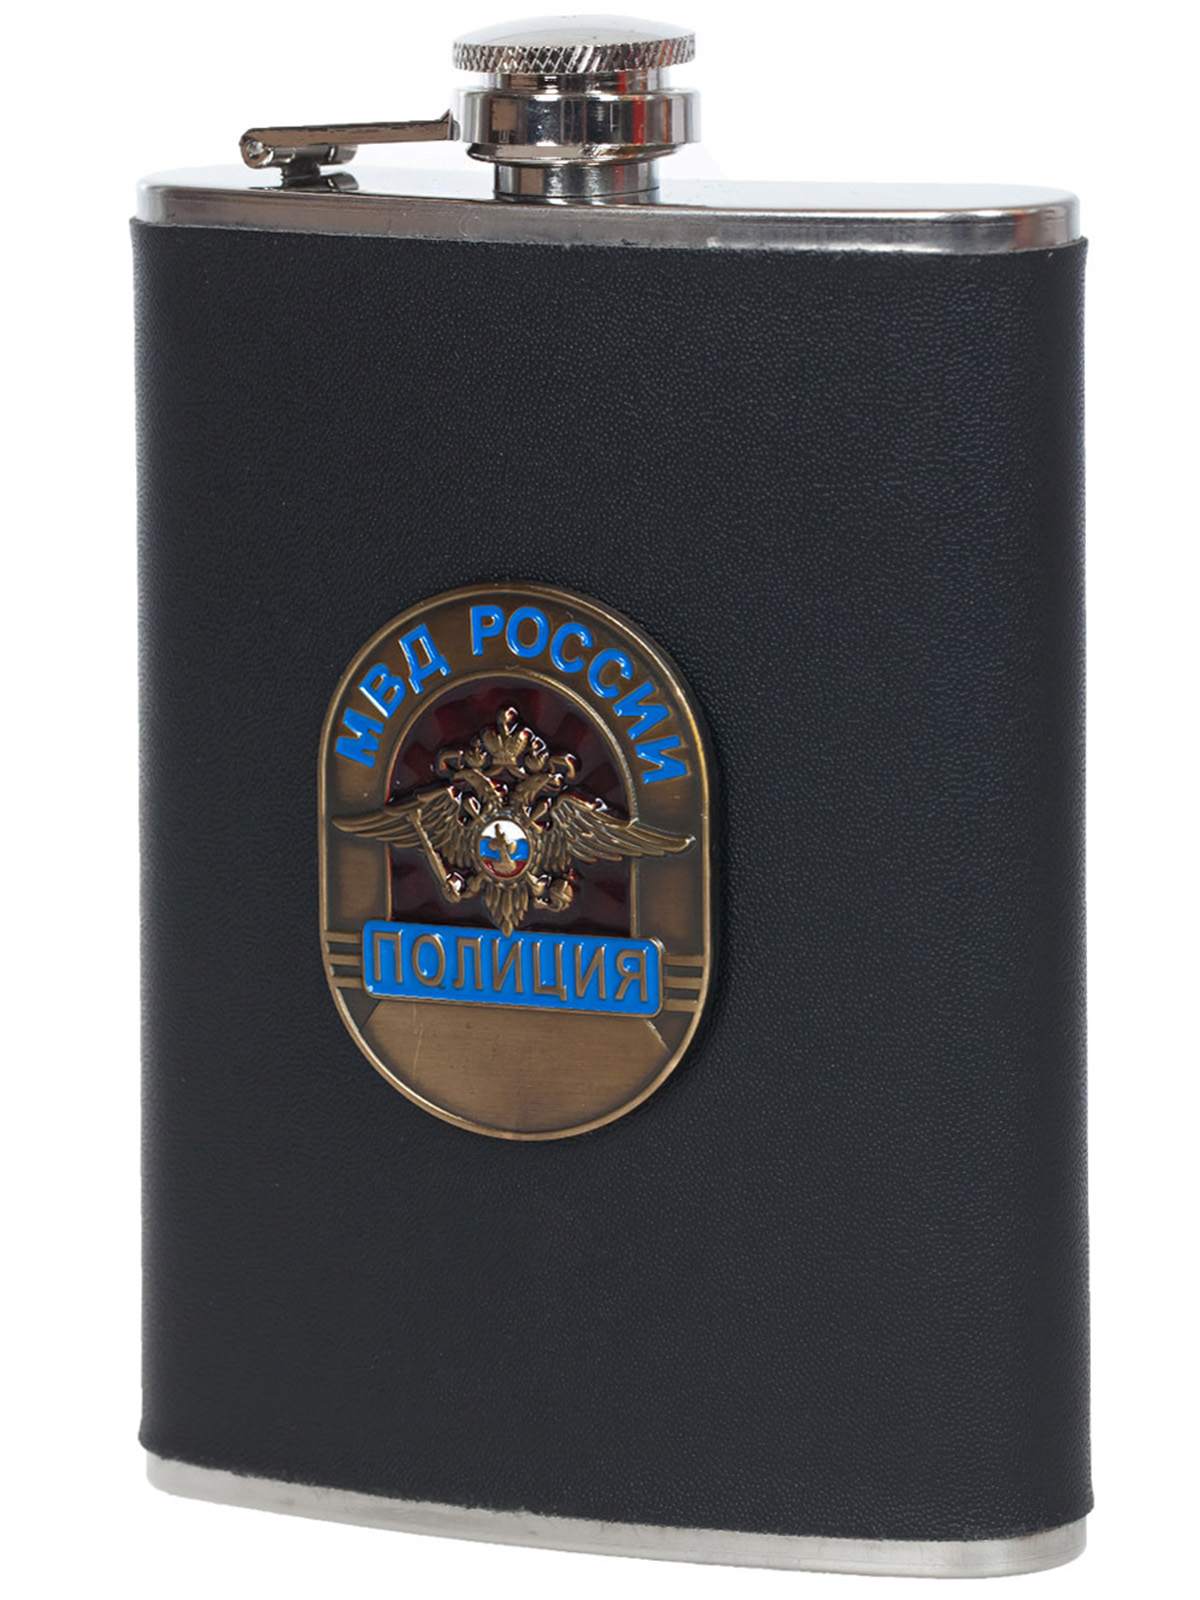 Заказать карманную фляжку "Полиция МВД России" (обтянутая кожей, металлический жетон)